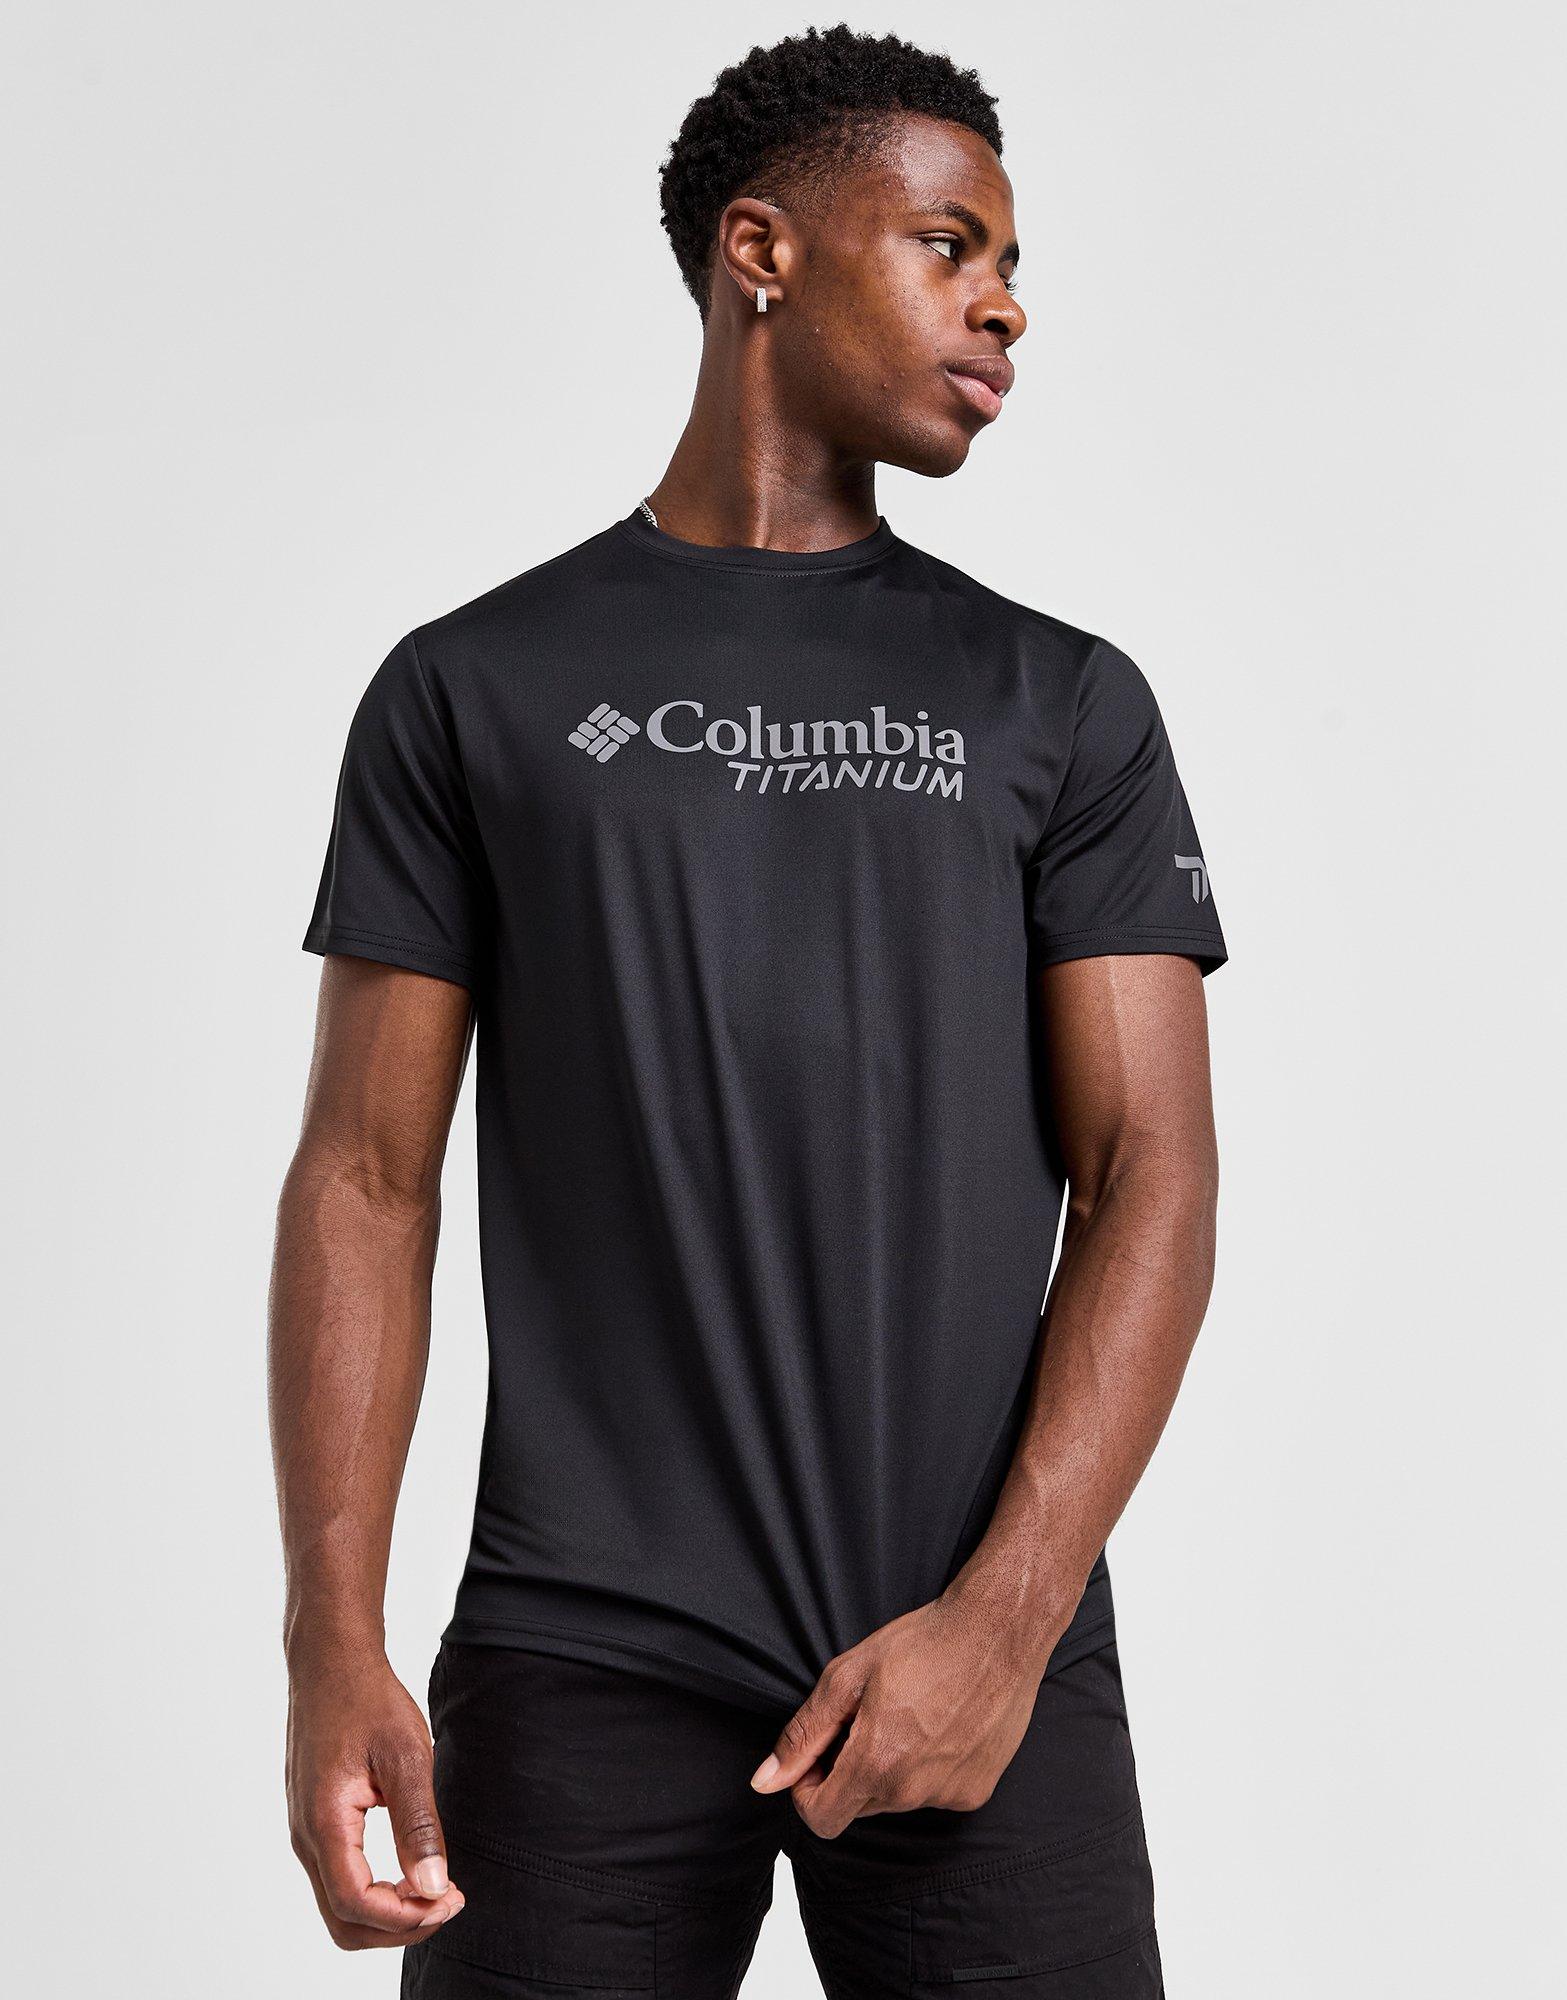 Black Columbia Titanium T-Shirt